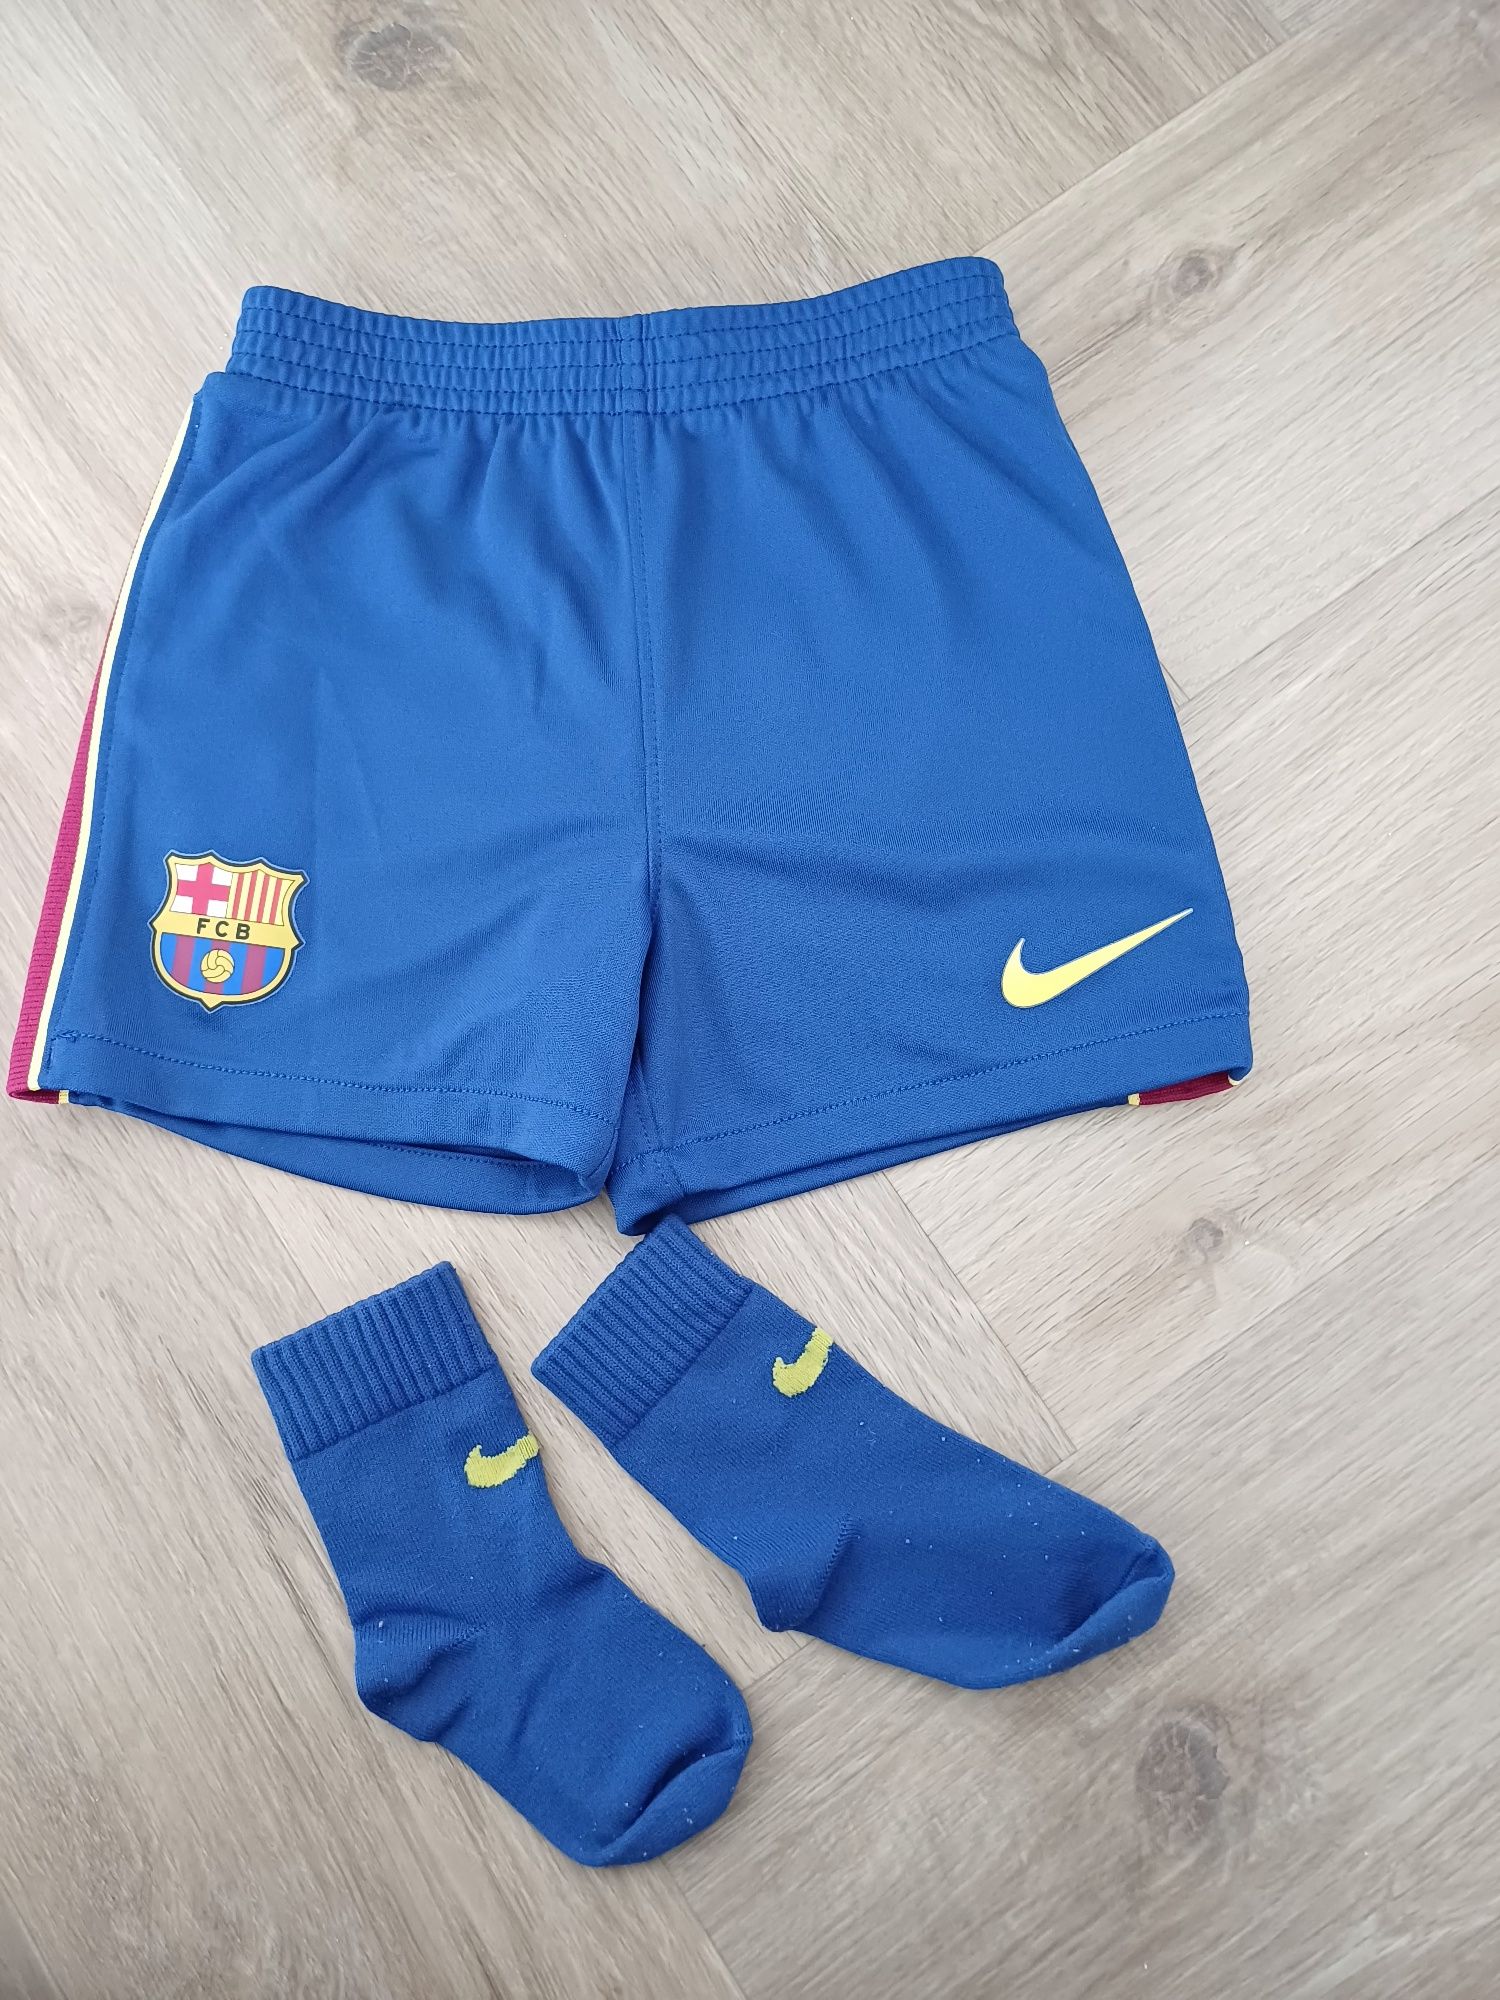 Spodenki Nike, FC Barcelona, skarpetki gratis